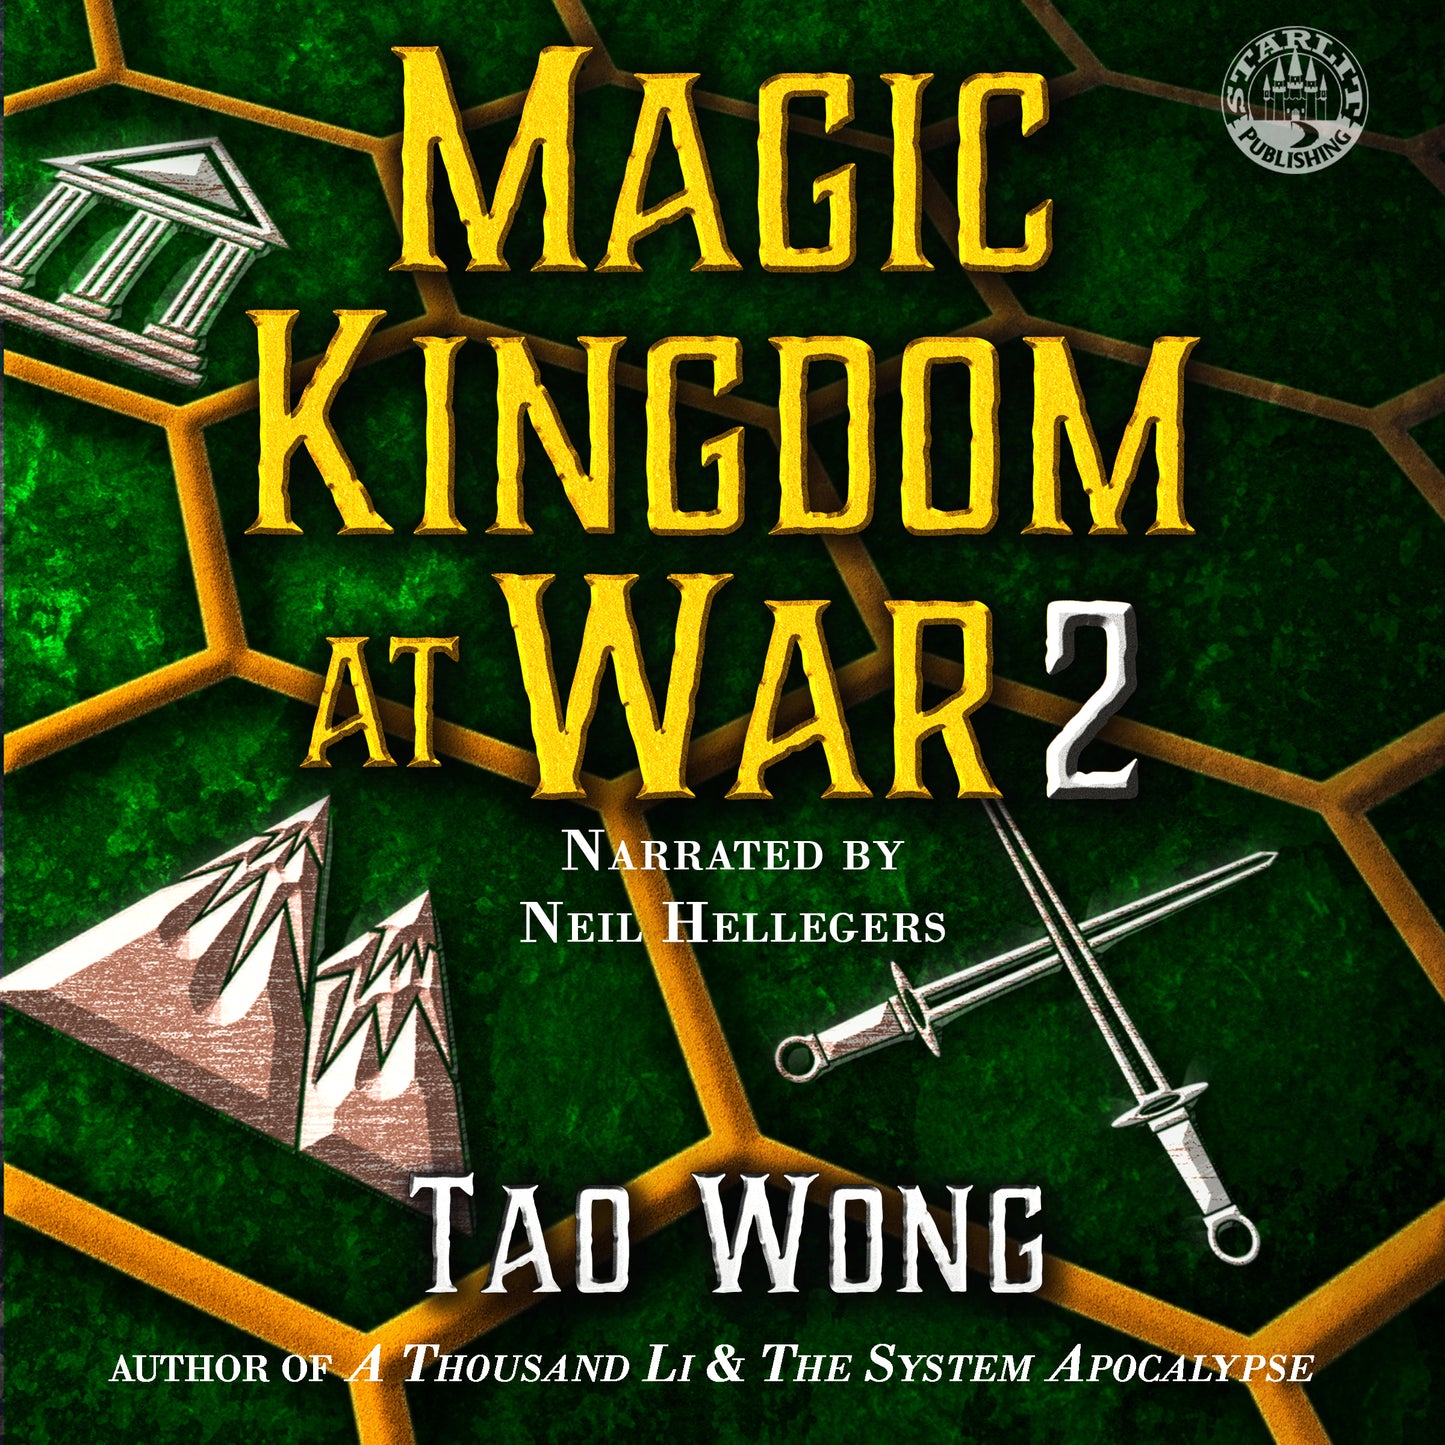 Magic Kingdom at War Volume 2